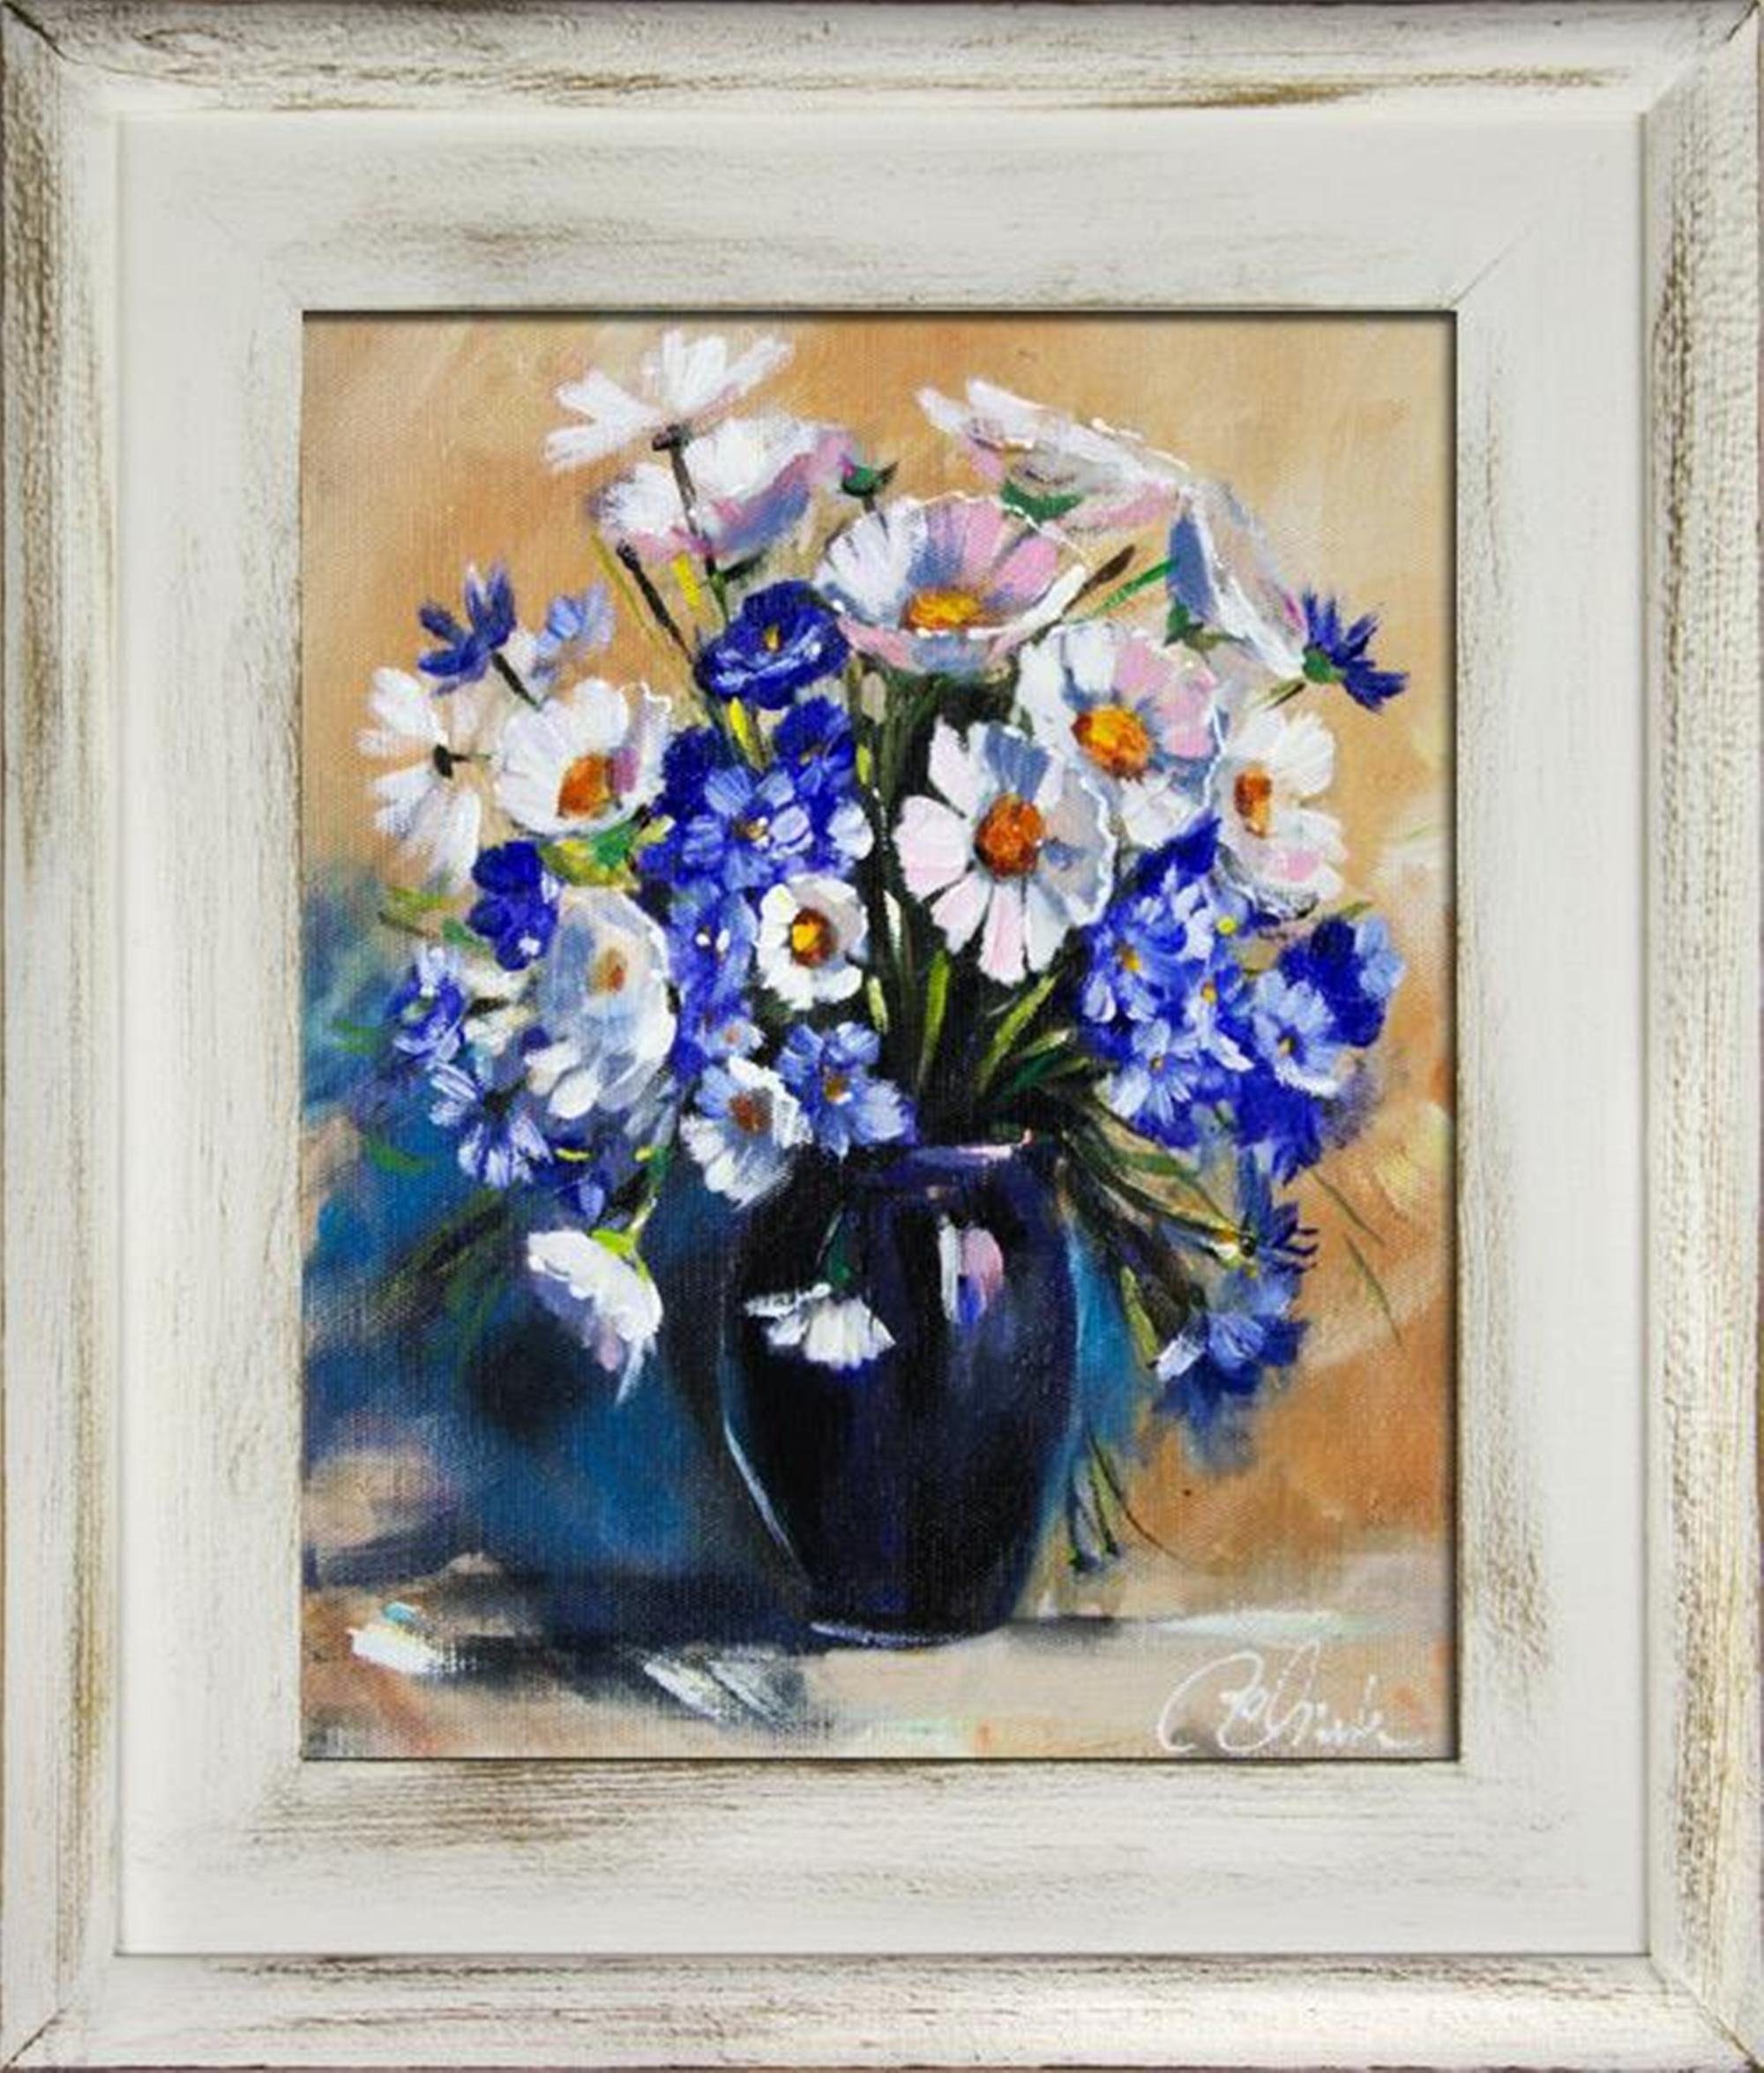 SOFORT, Bild Gemälde Ölgemälde Blumen Gemälde Bilder Blumen JVmoebel Rahmen G16180 Ölbild